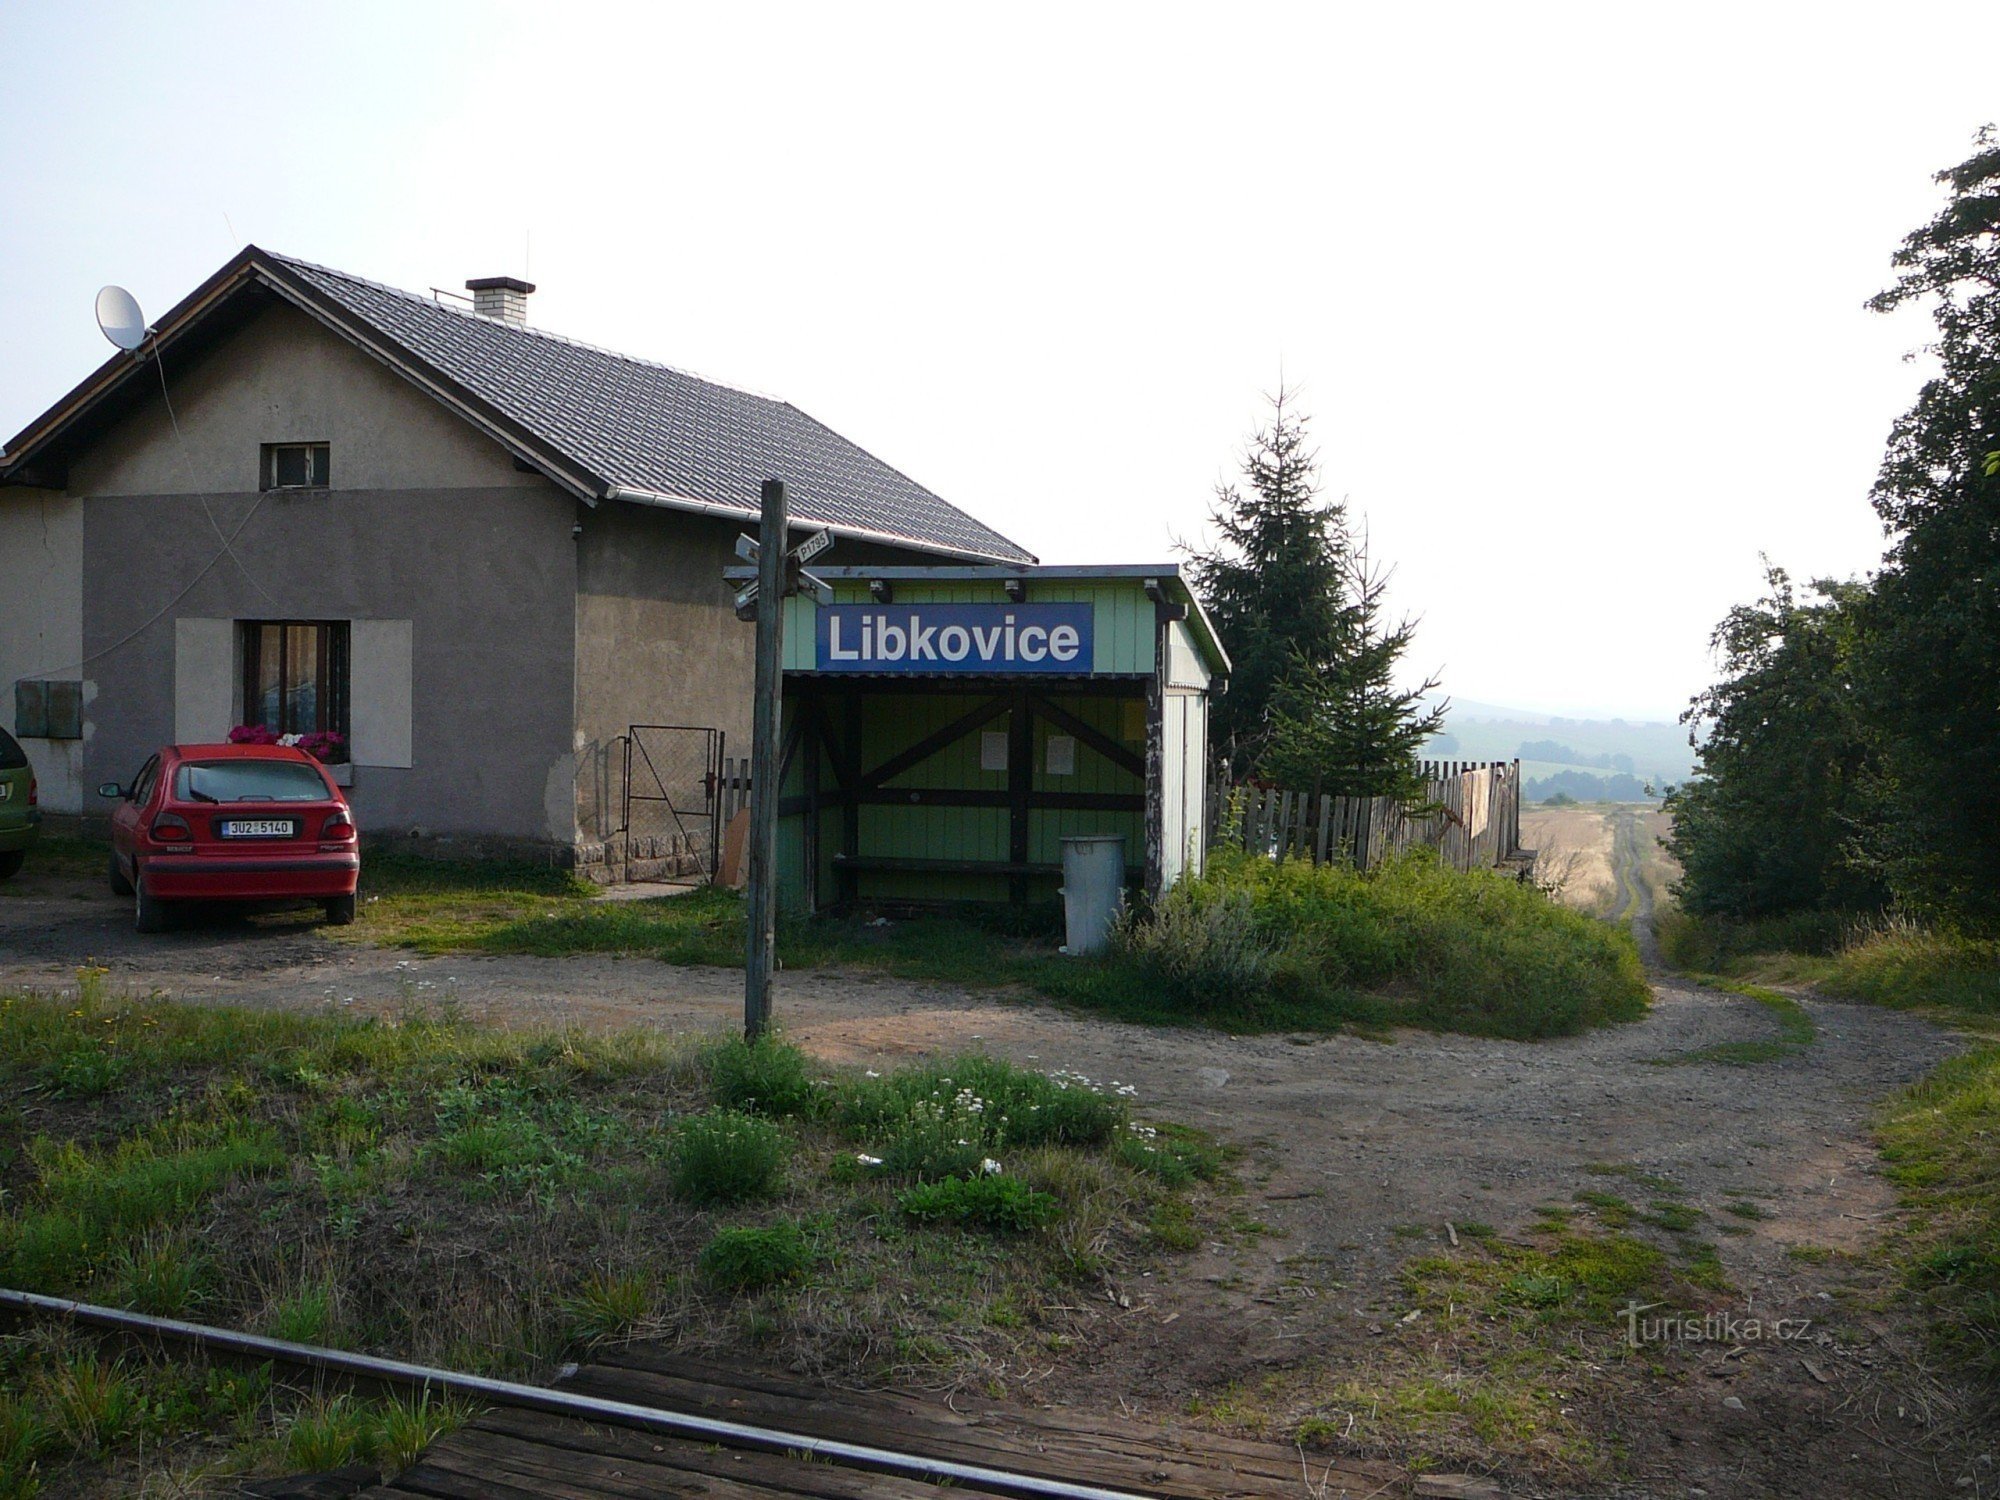 リブコヴィツェ停留所